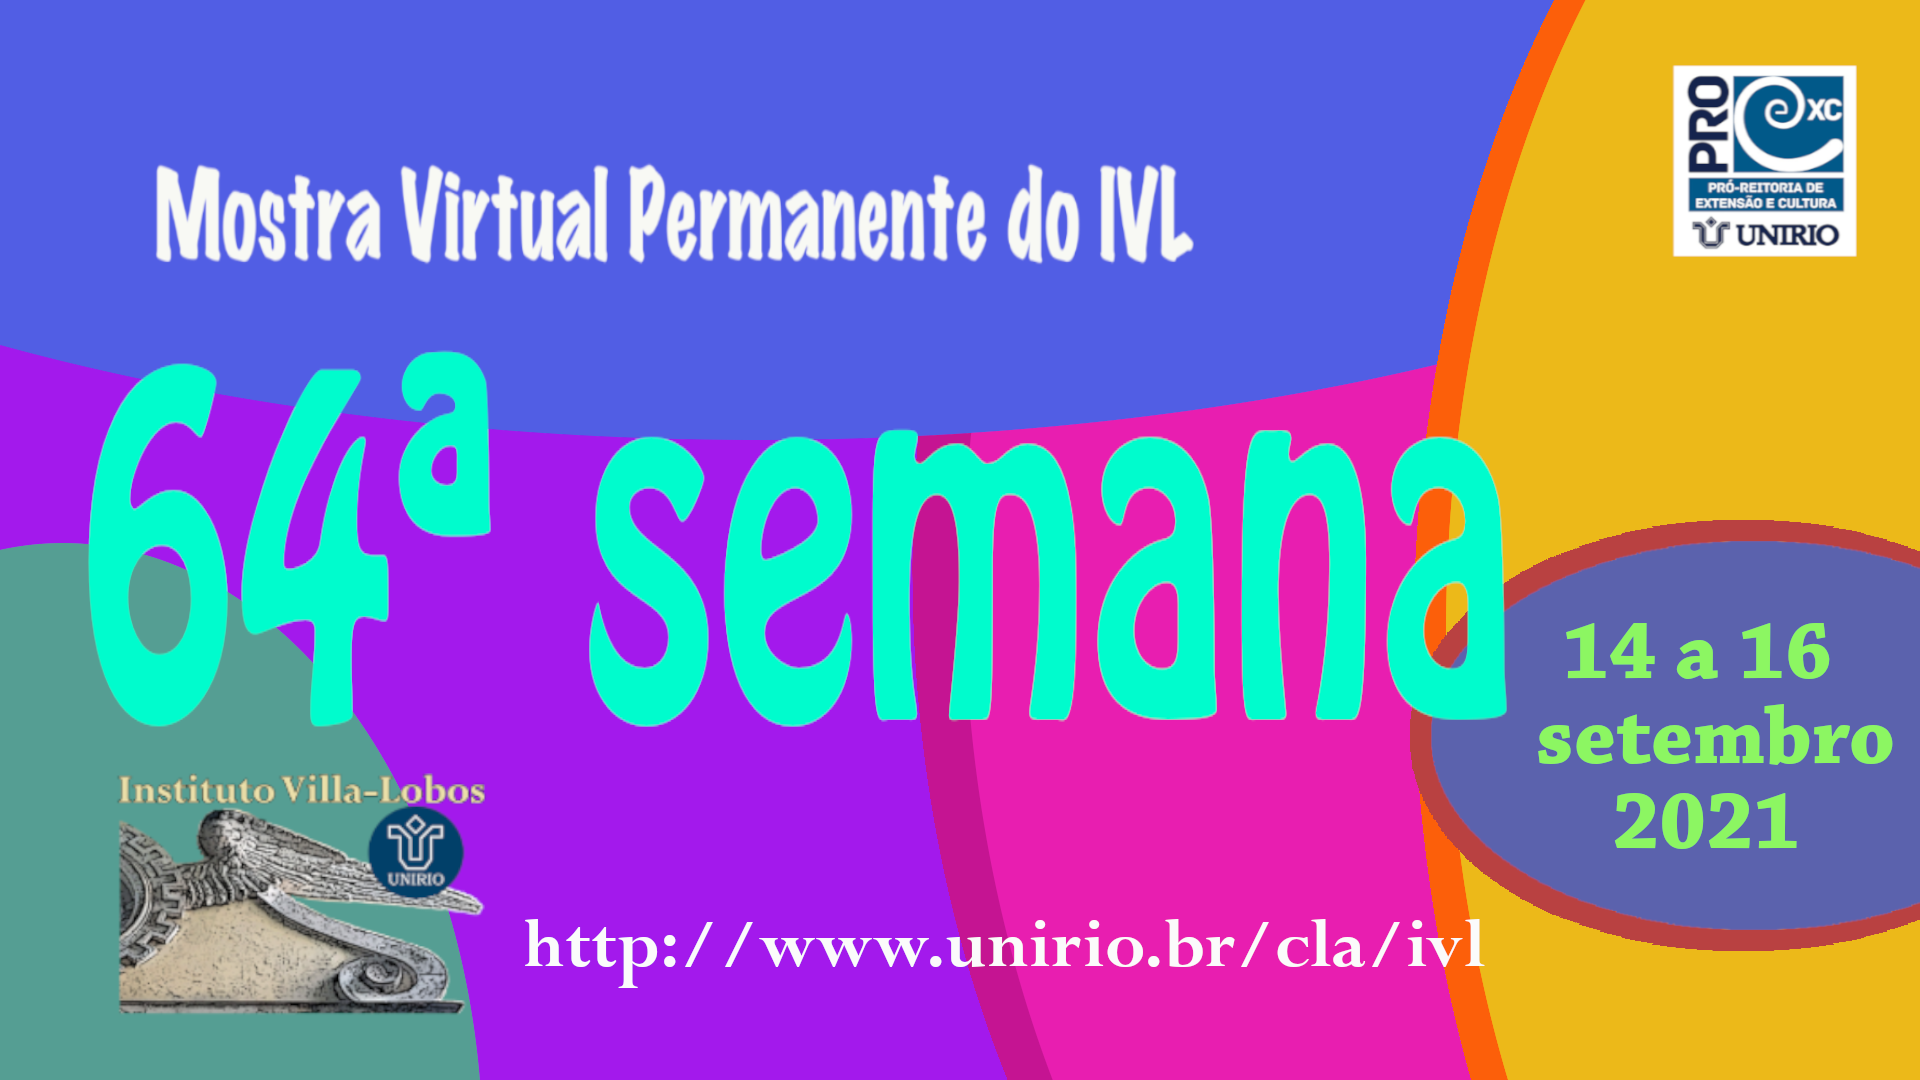 Mostra Virtual Permanente do IVL - 64ª semana 